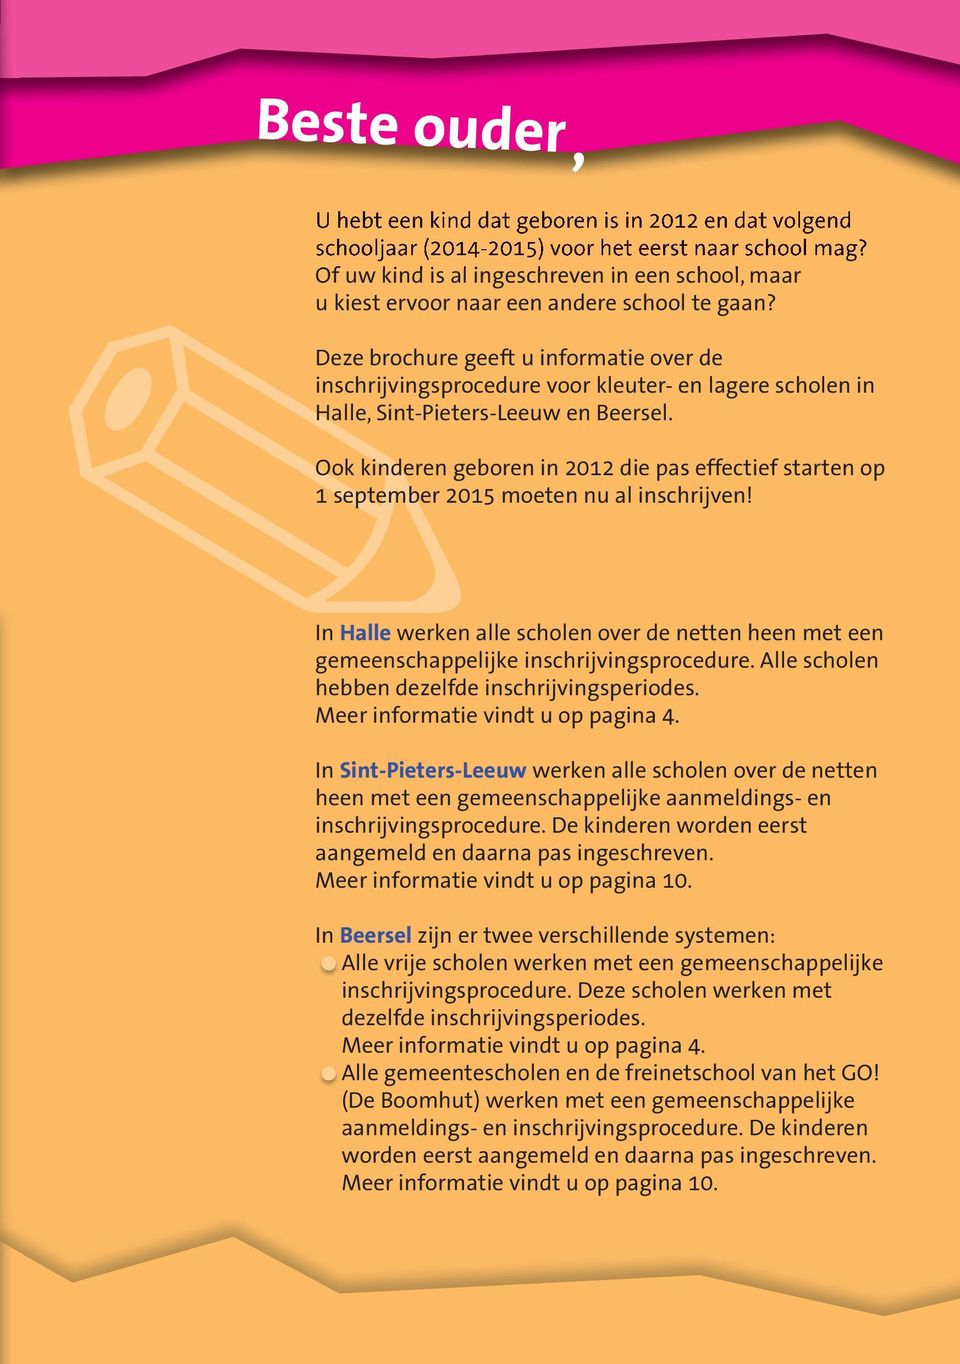 Deze brochure geeft u informatie over de inschrijvingsprocedure voor kleuter- en lagere scholen in Halle, Sint-Pieters-Leeuw en Beersel.